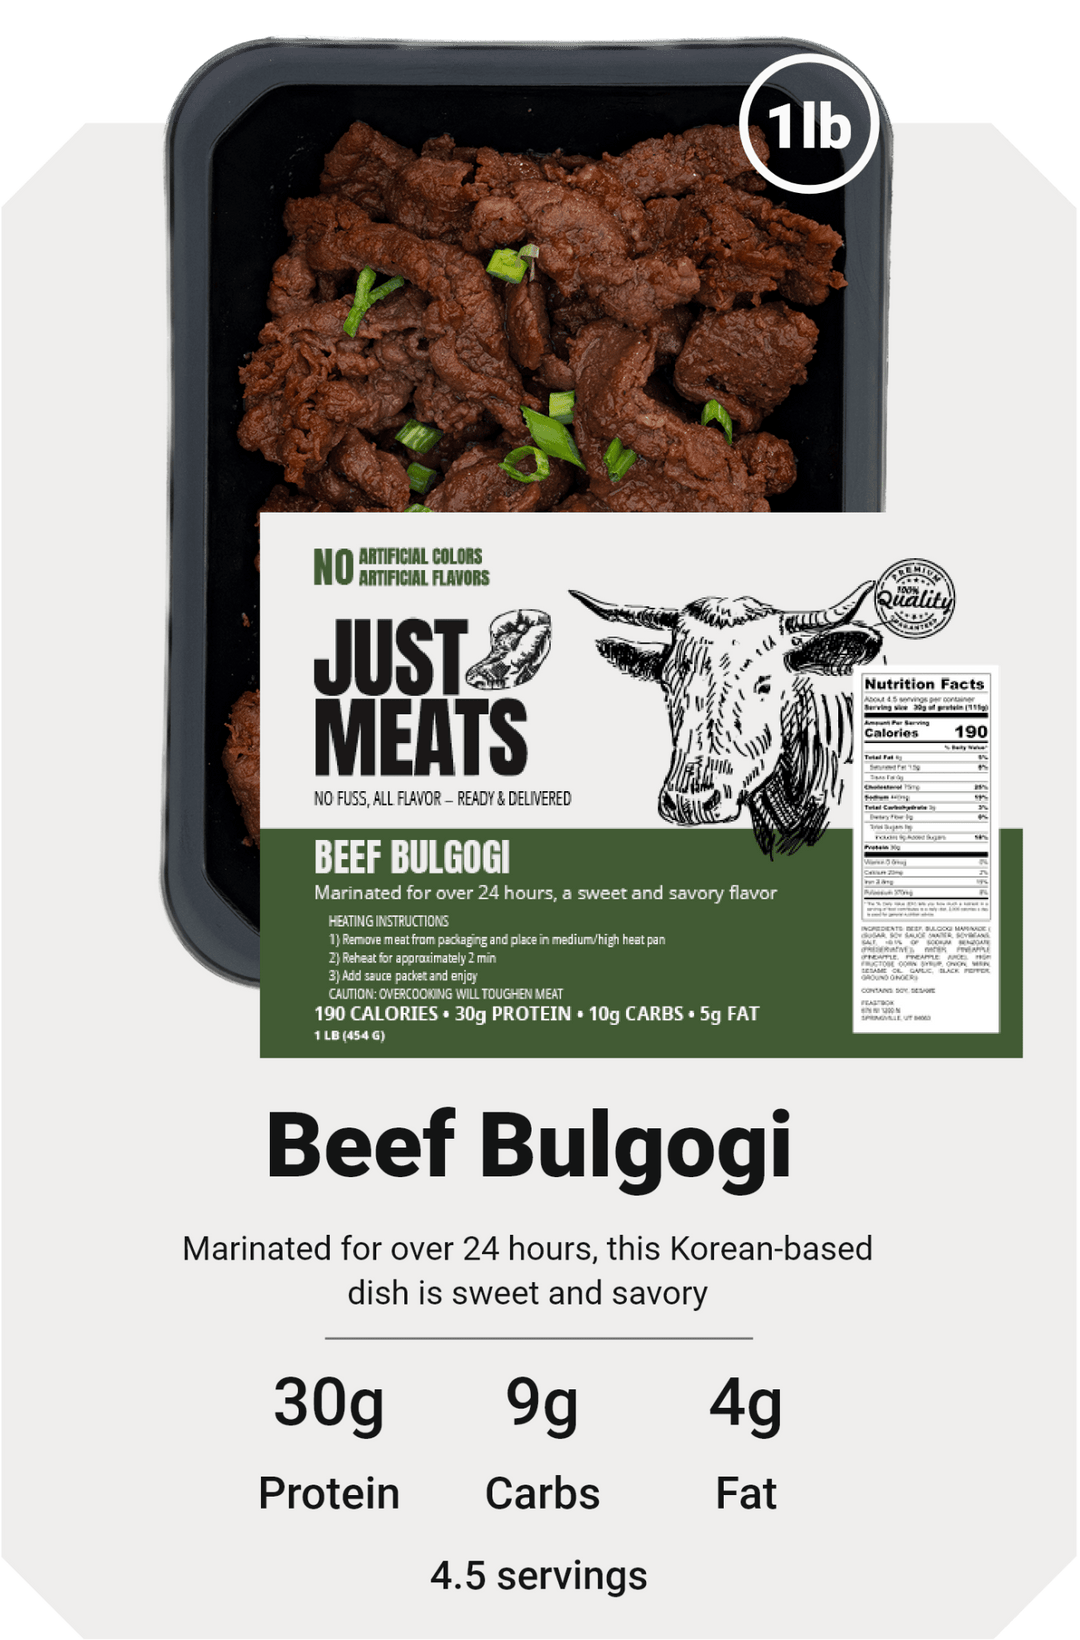 Beef Bulgogi – Just Meats